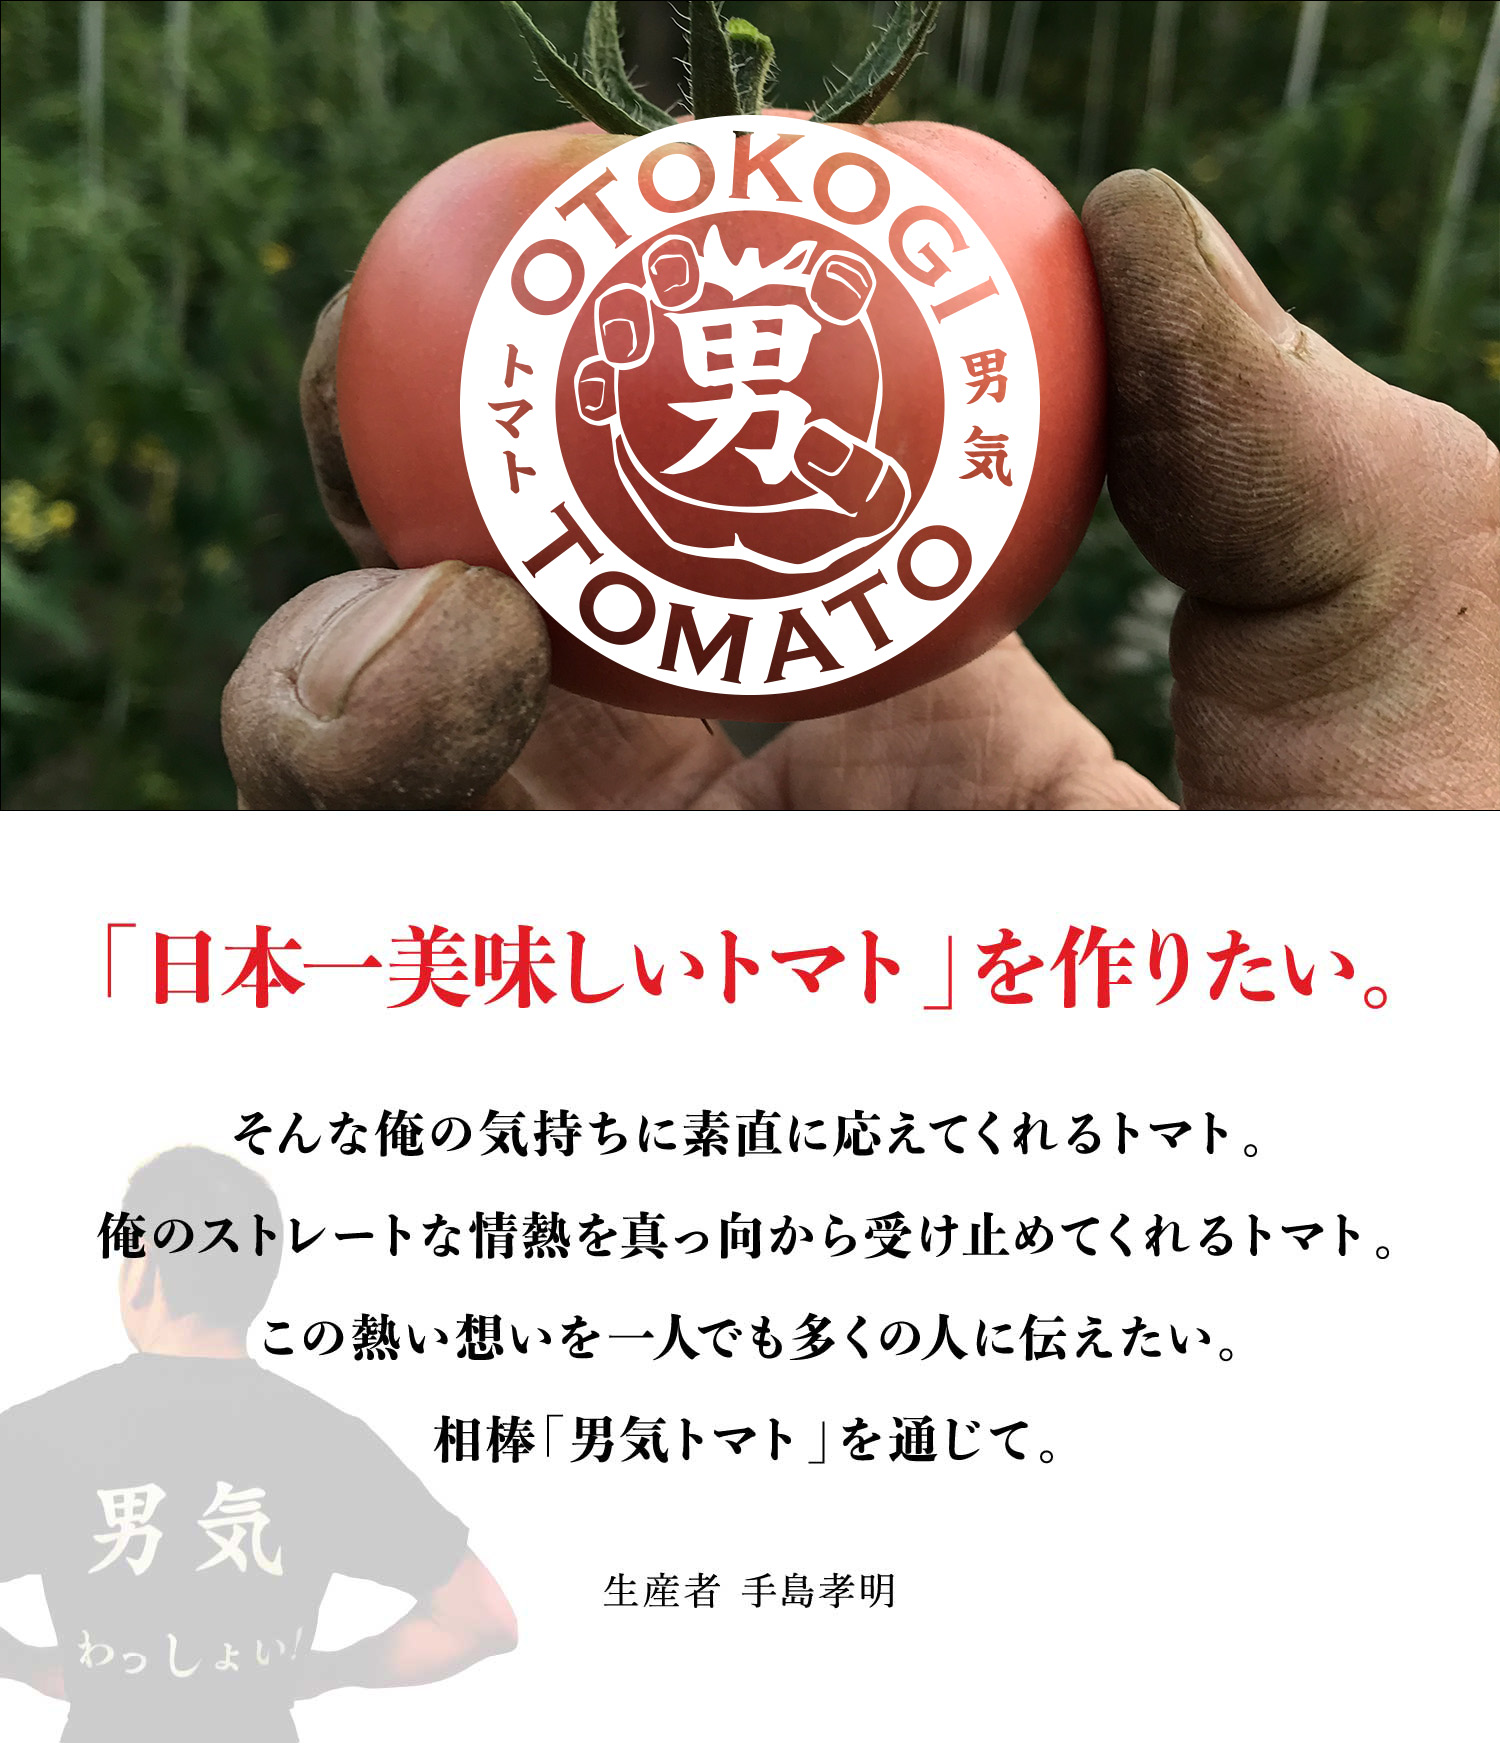 「日本一美味しいトマト」を作りたい。そんな俺の気持ちに素直に応えてくれるトマト。俺のストレートな情熱を真っ向から受け止めてくれるトマト。この熱い想いを一人でも多くの人に伝えたい。相棒「男気トマト」を通じて。 - 生産者 手島孝明